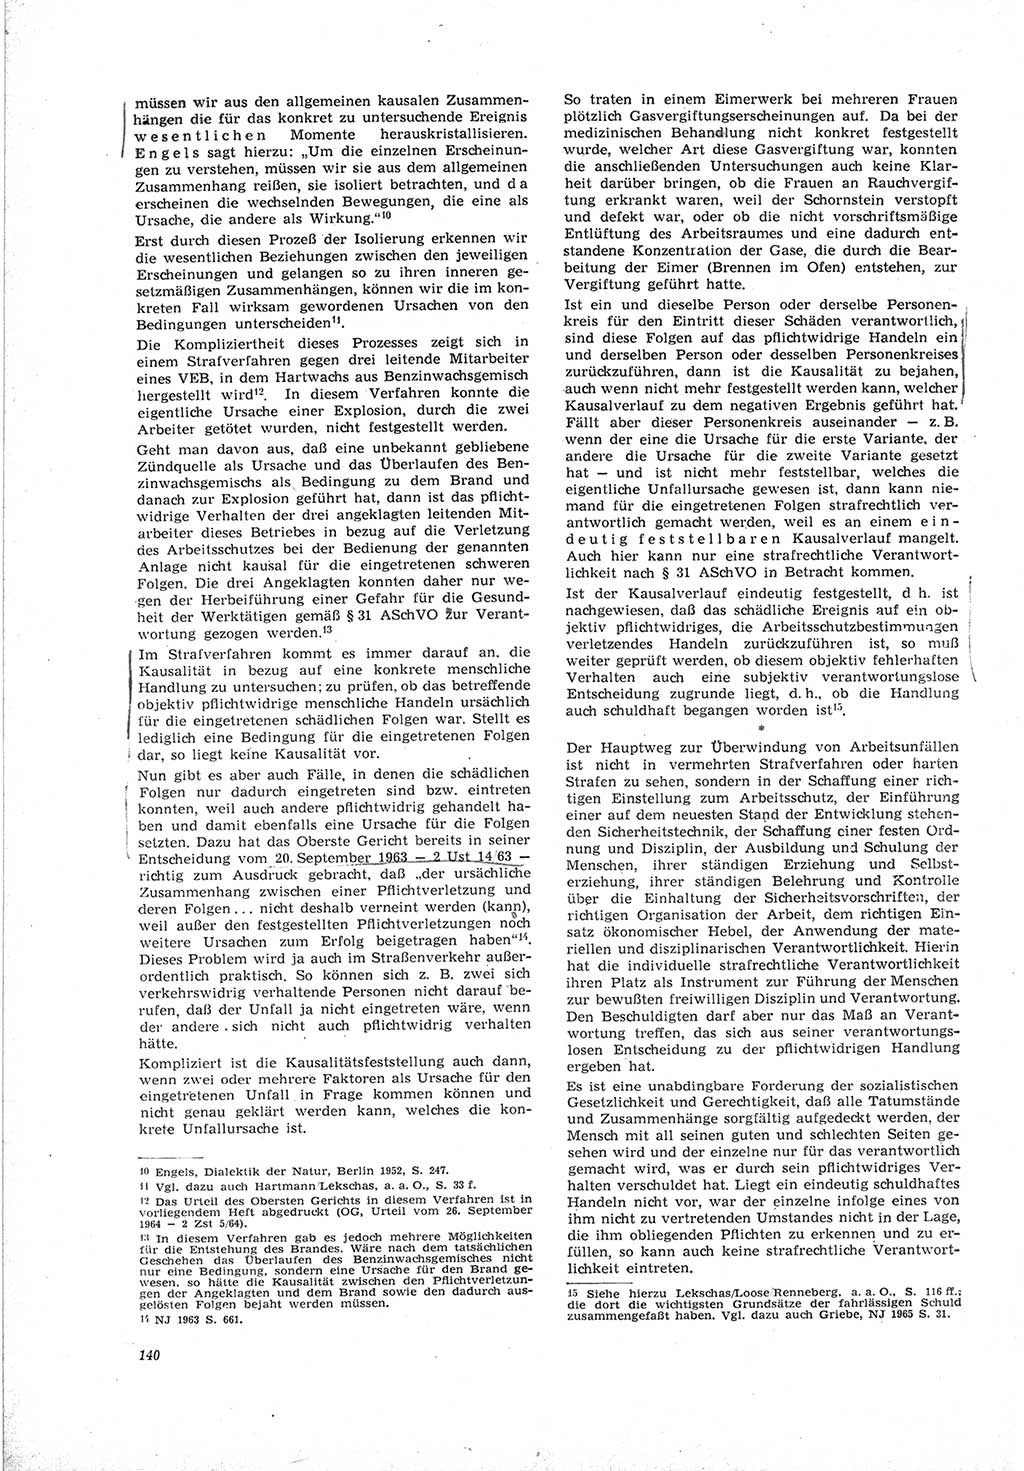 Neue Justiz (NJ), Zeitschrift für Recht und Rechtswissenschaft [Deutsche Demokratische Republik (DDR)], 19. Jahrgang 1965, Seite 140 (NJ DDR 1965, S. 140)